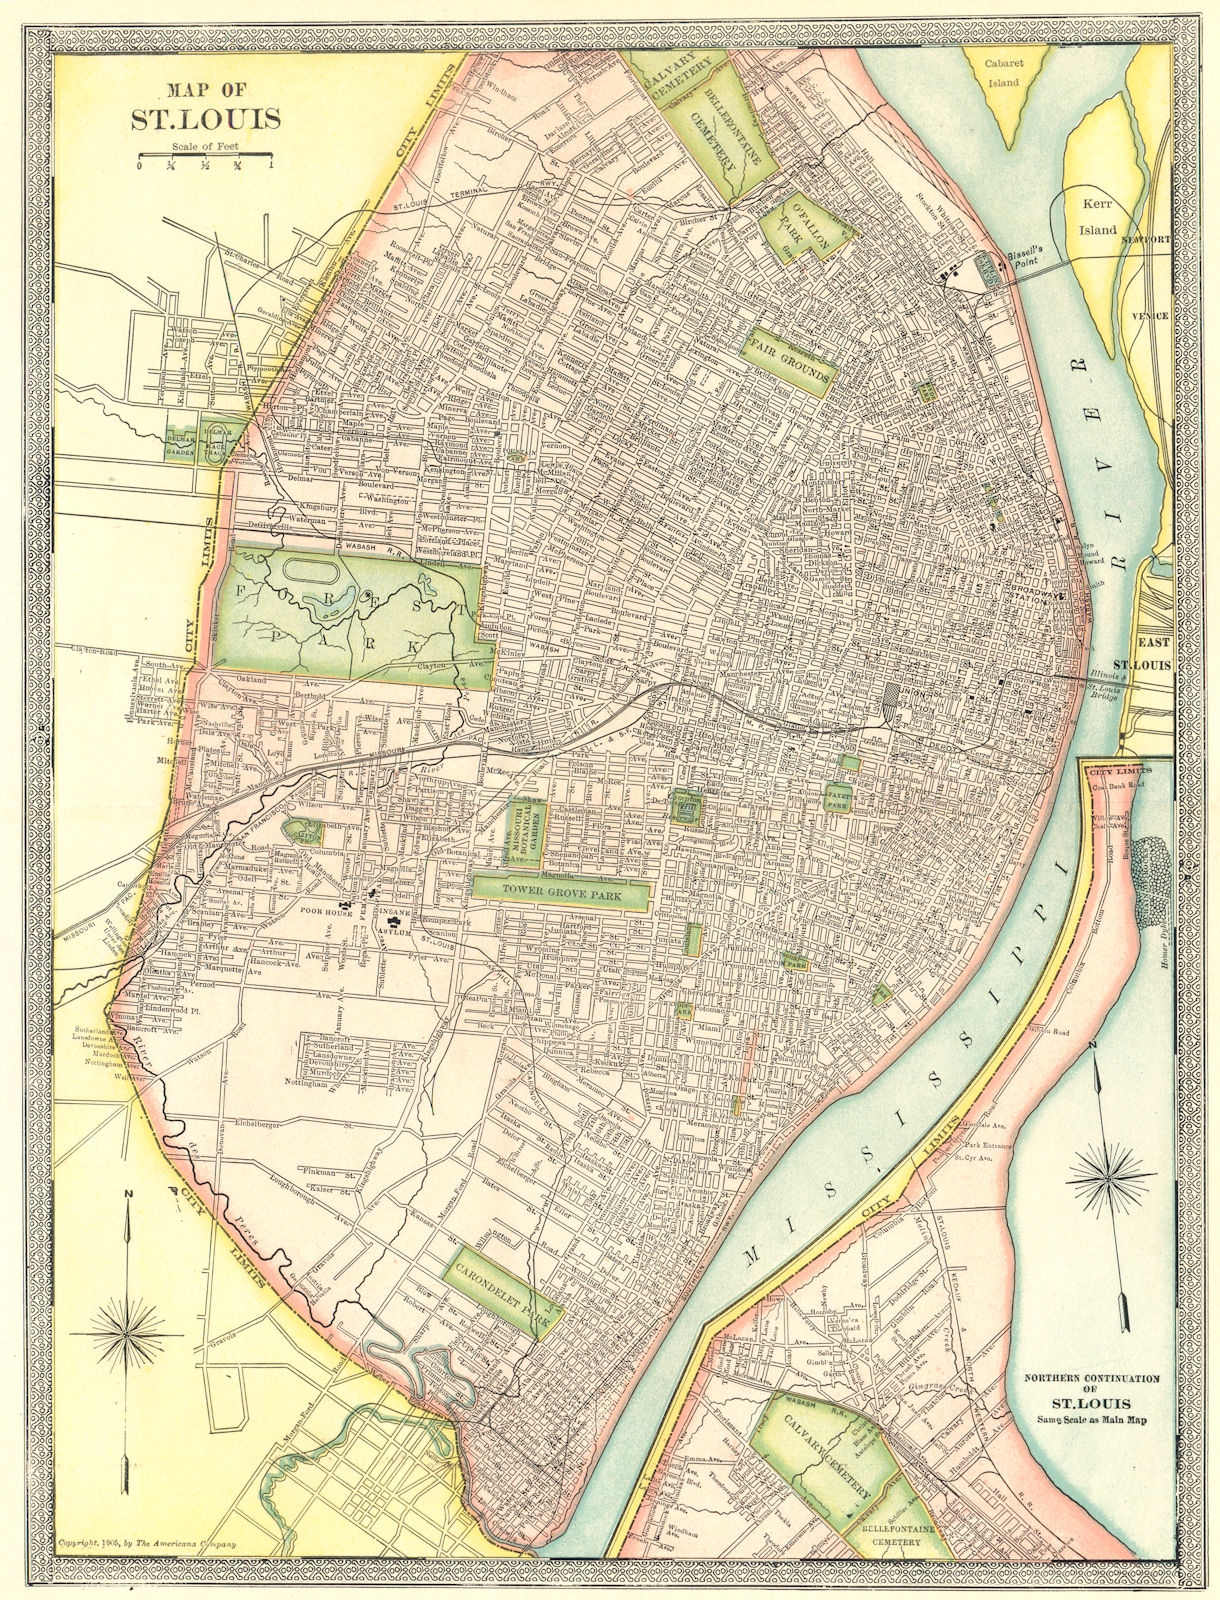 Associate Product ST LOUIS town/city plan. Missouri 1907 old antique vintage map chart